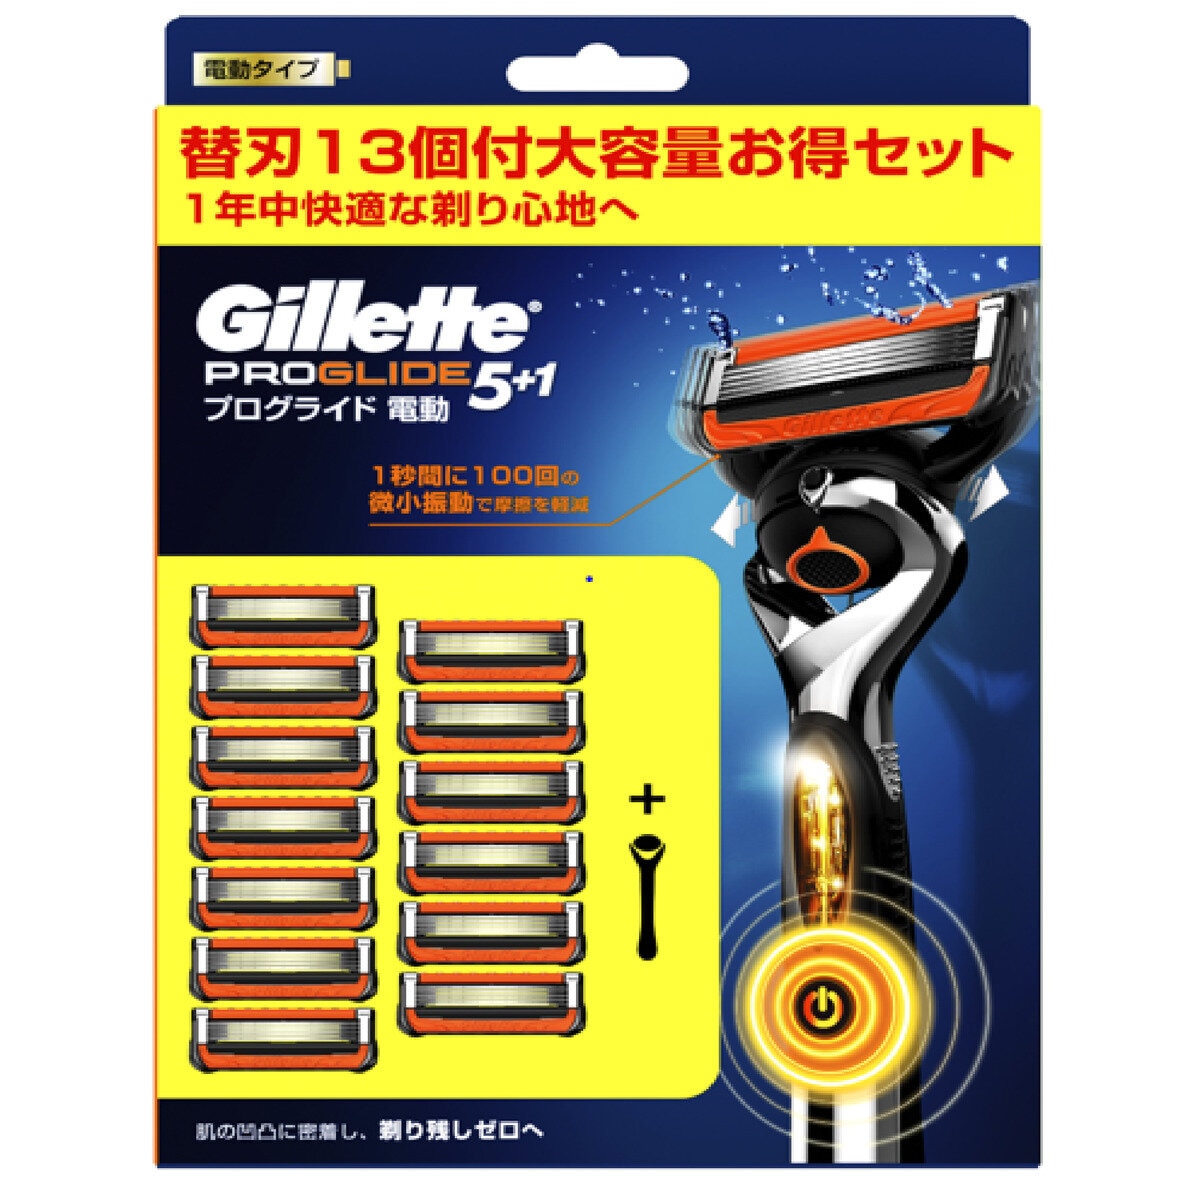 【正規品】Gillette ジレット プログライド 電動タイプ 替刃32個